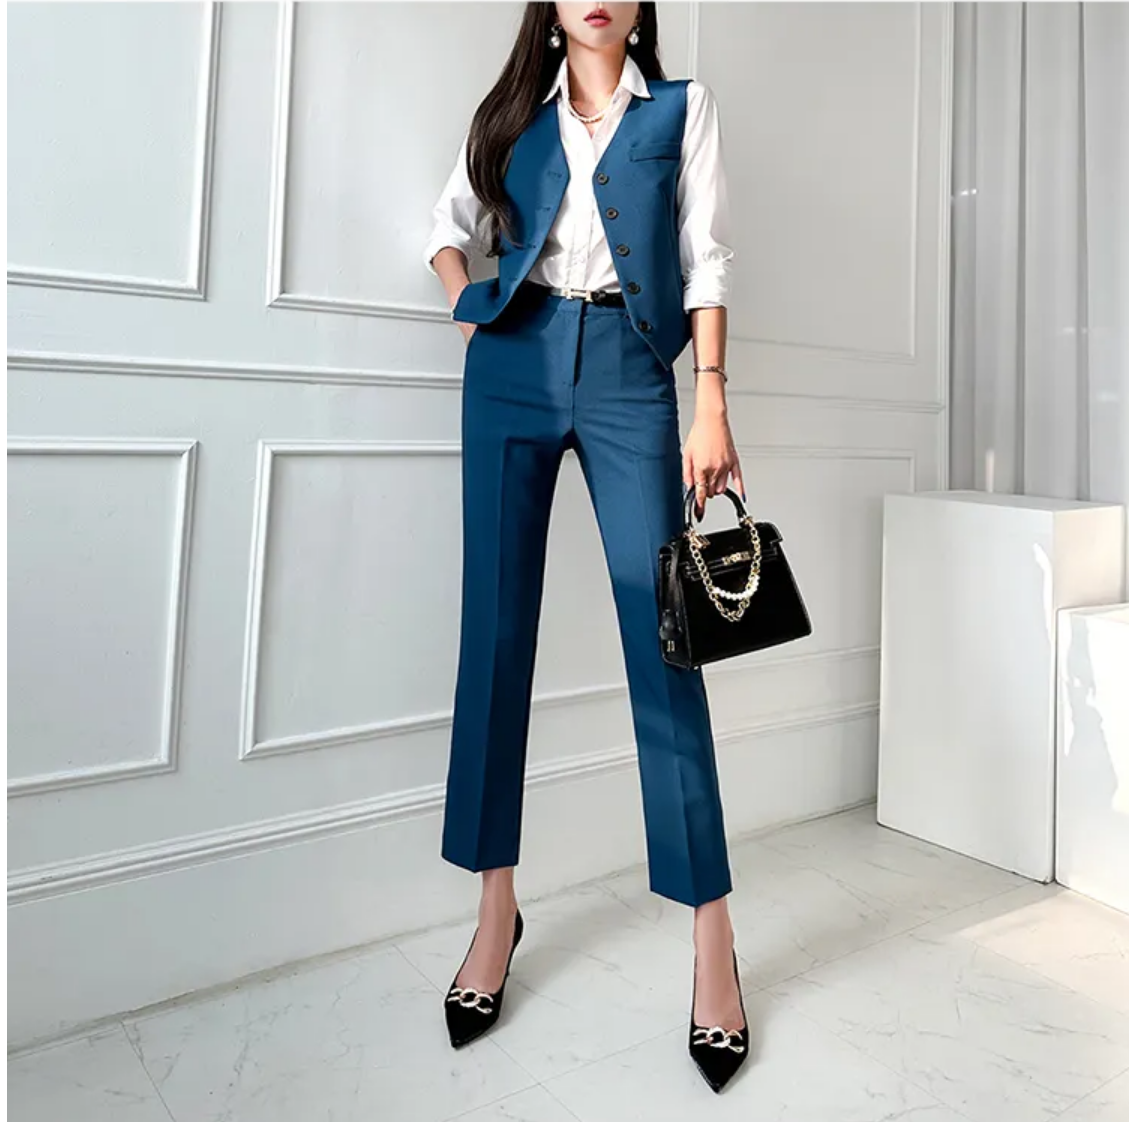 Fashion Korean  3 Pcs Elegant Long Sleeve Suit Jackets Vest and Straight Pants Suit